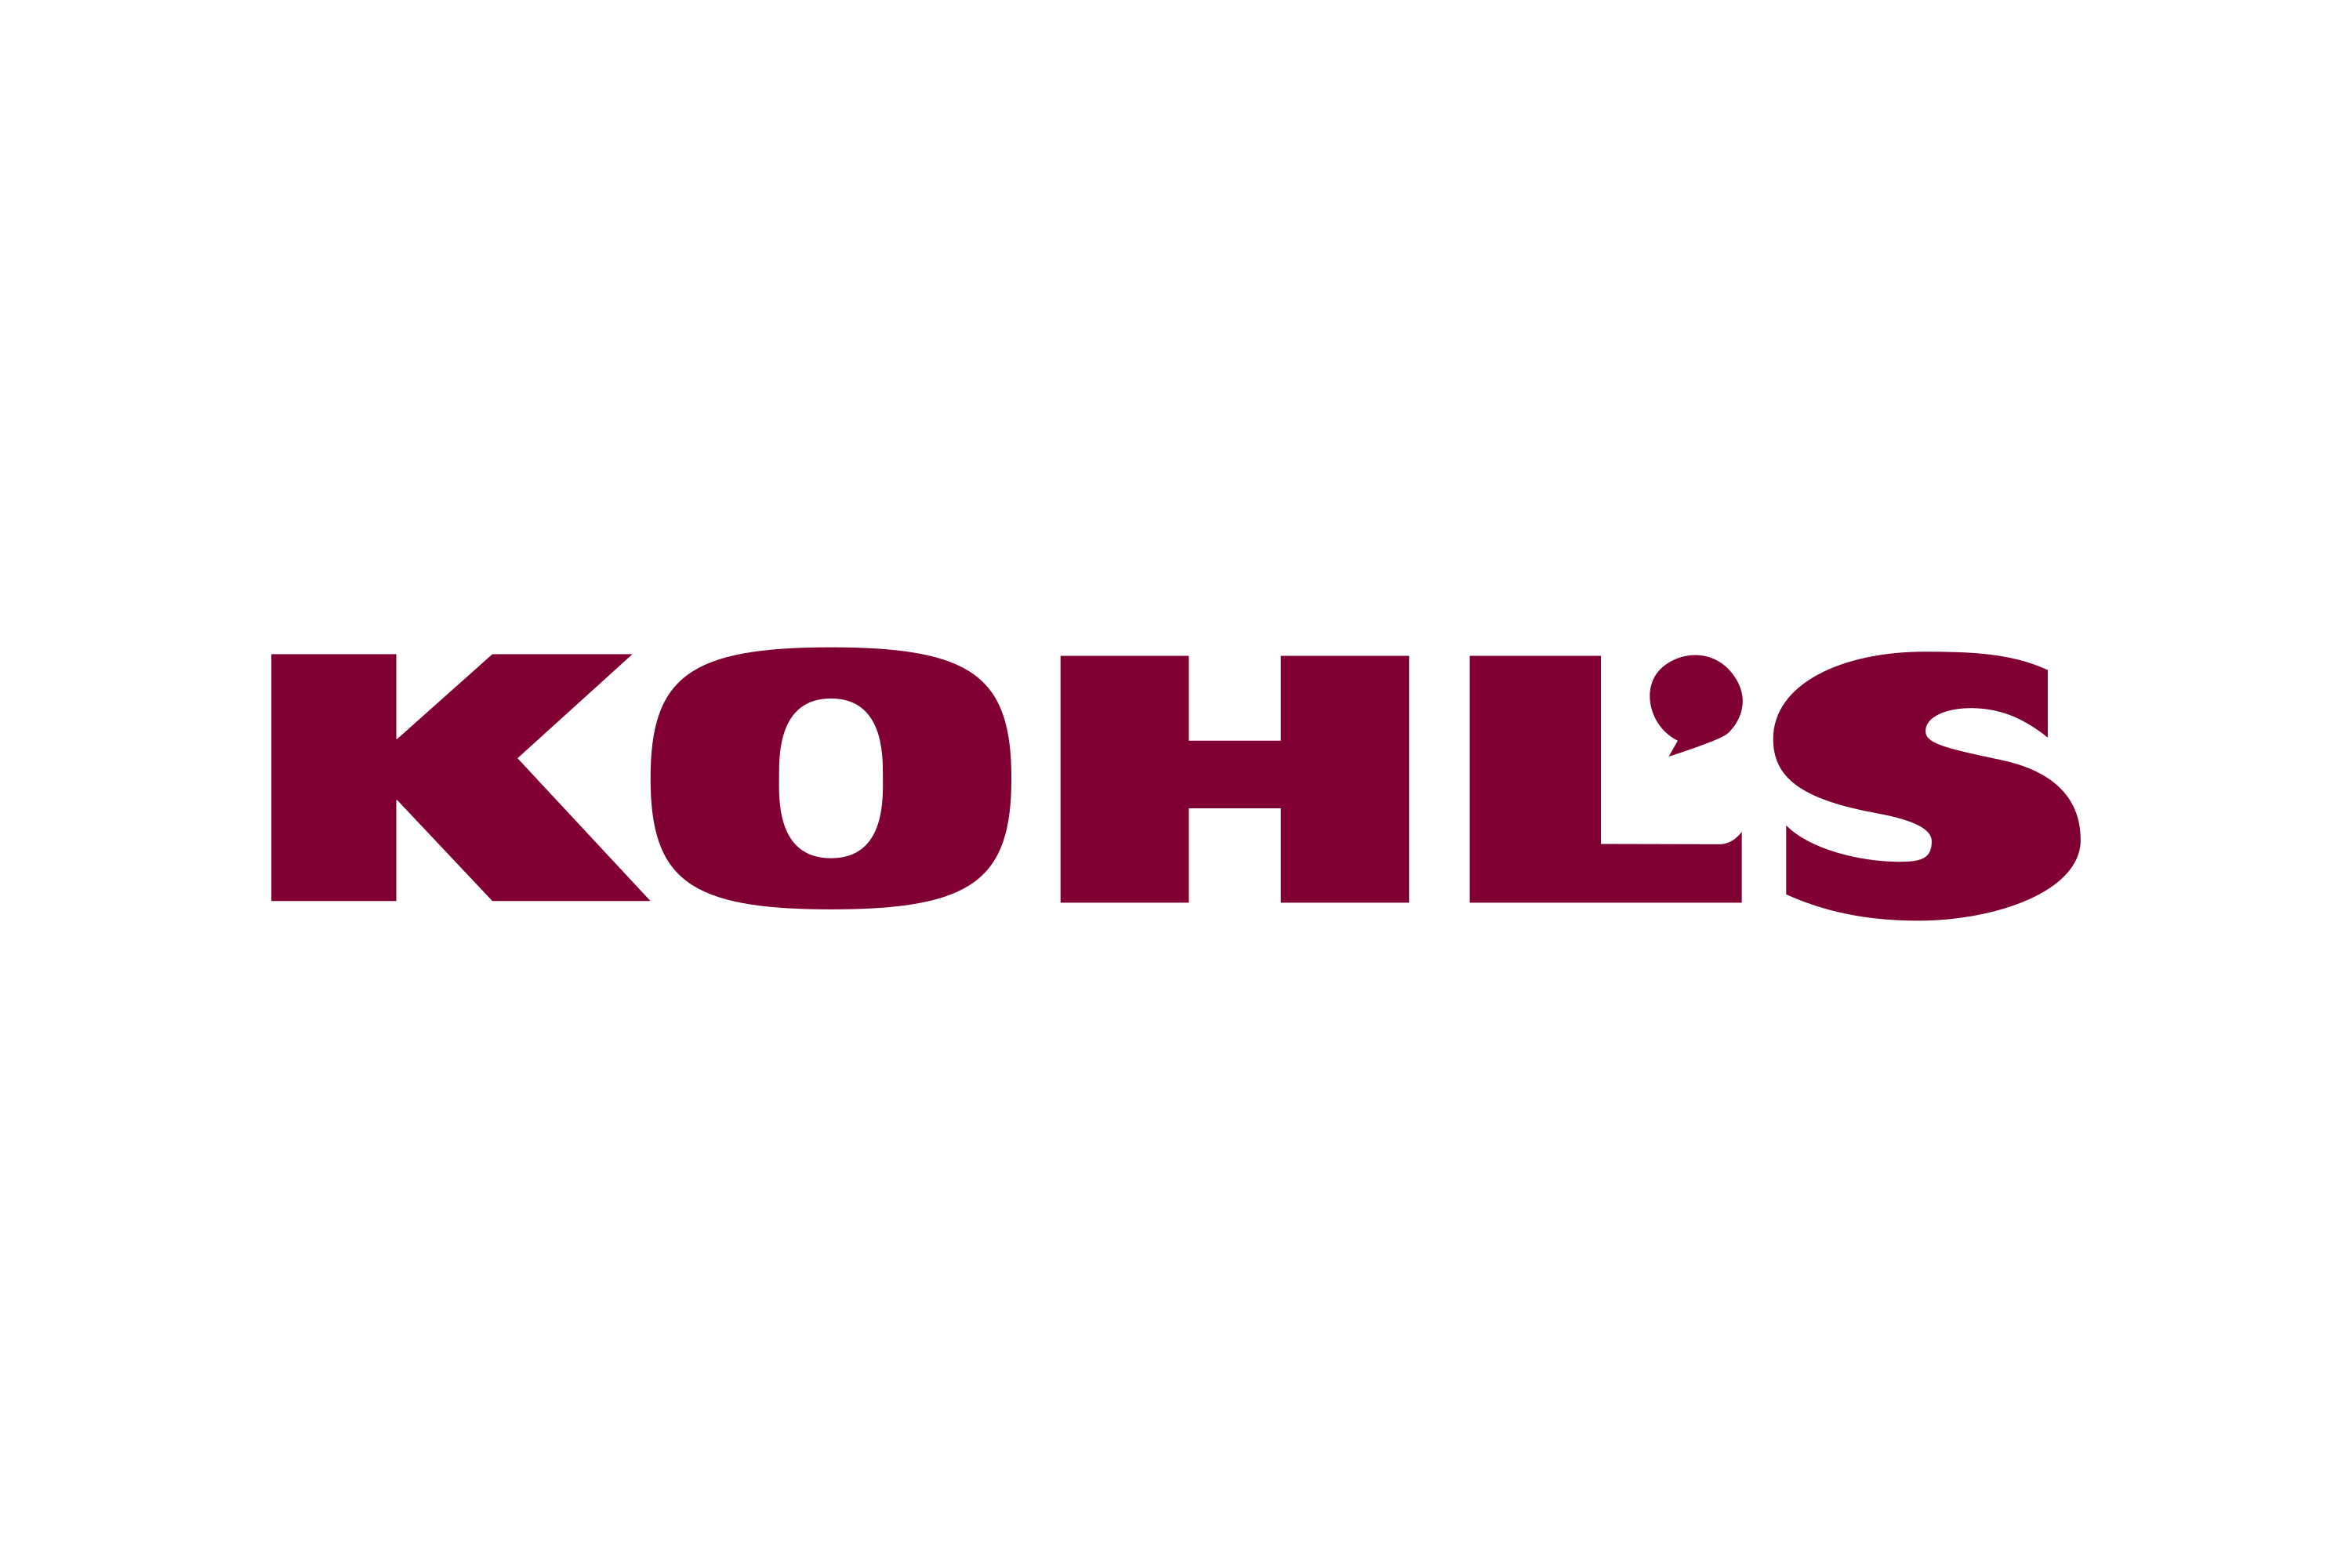 Download Kohl's Logo in SVG Vector or PNG File Format 